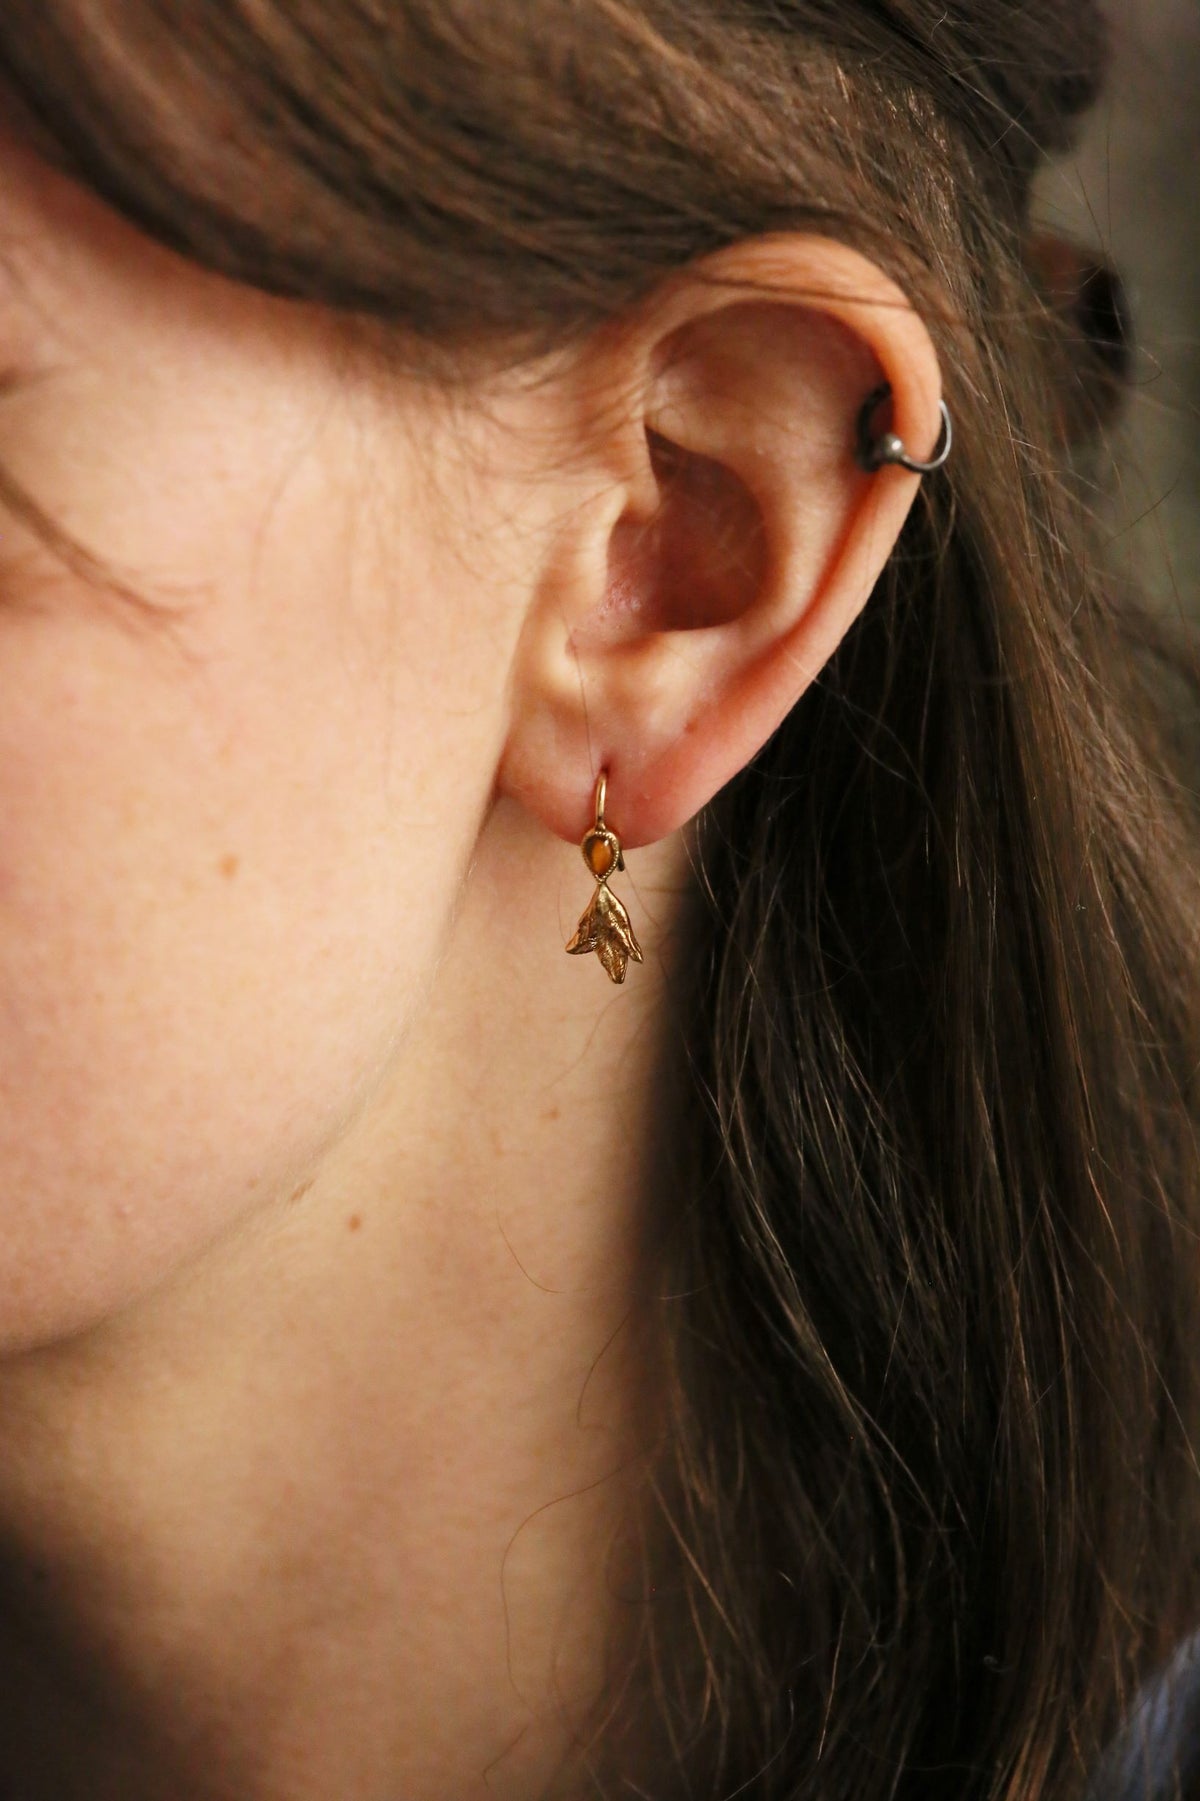 The Sprig Earrings